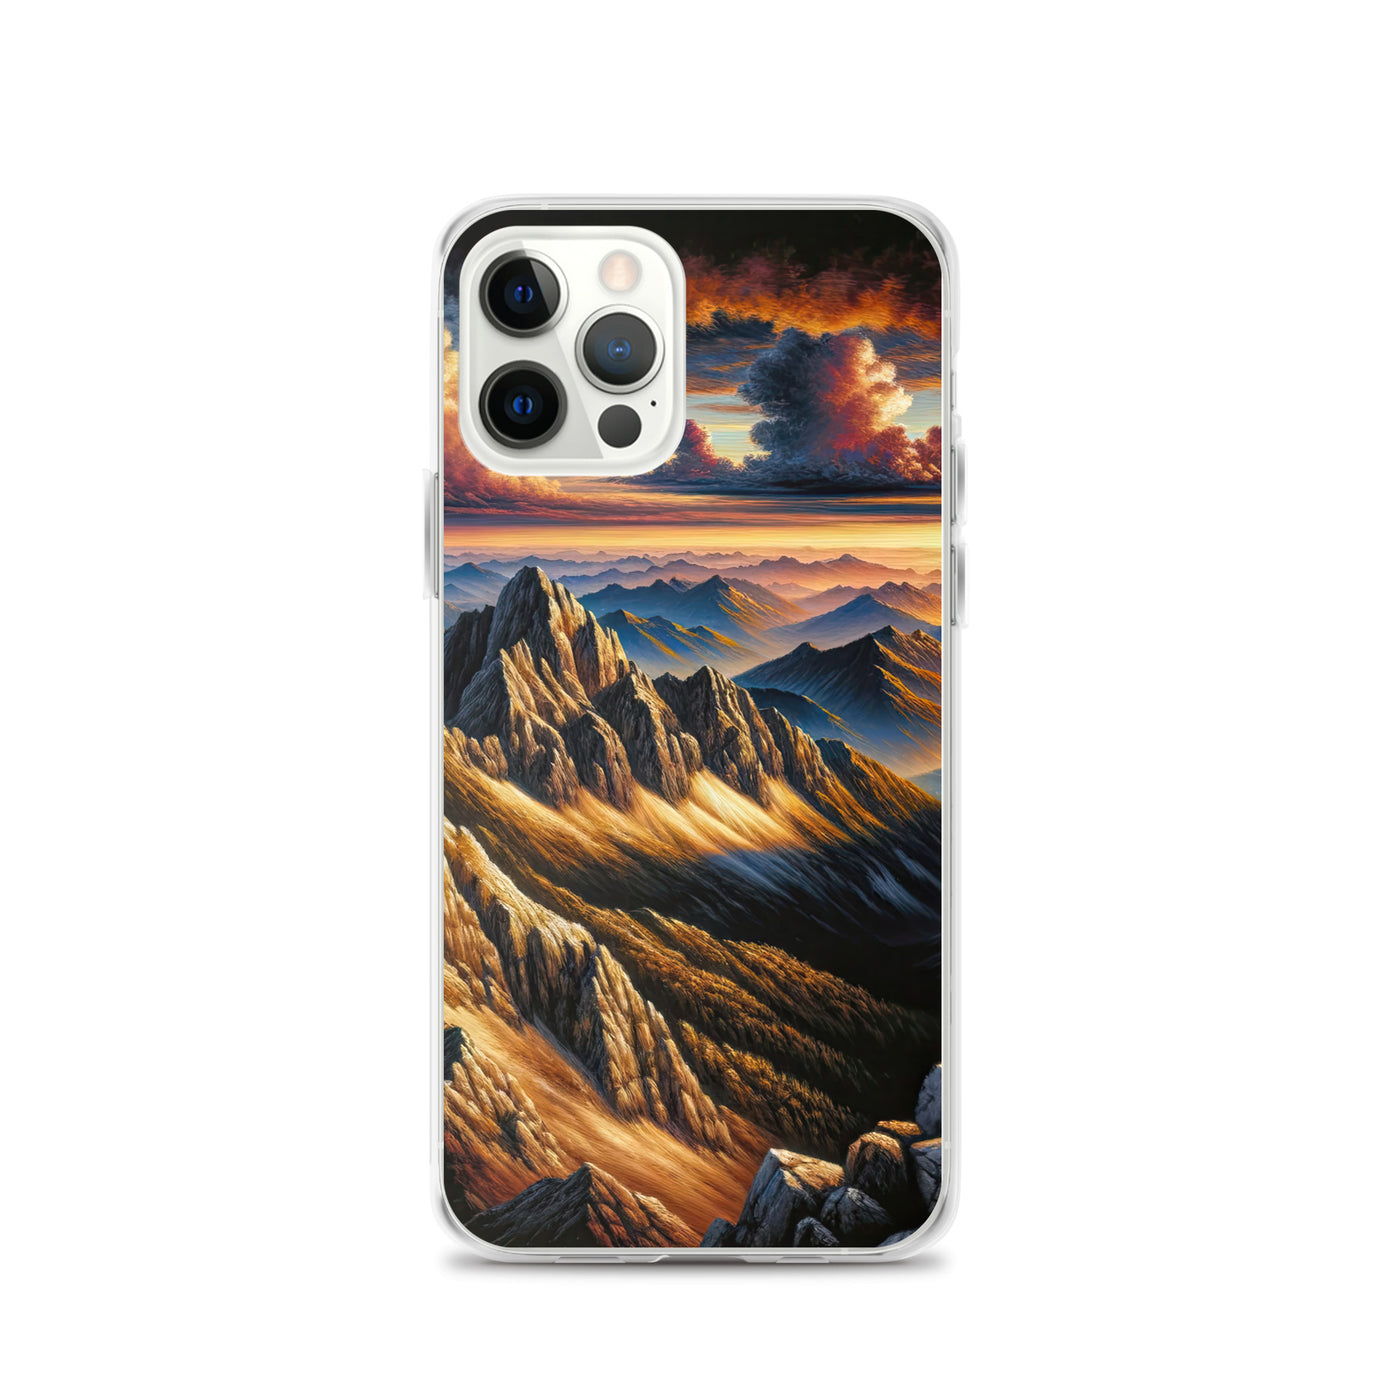 Alpen in Abenddämmerung: Acrylgemälde mit beleuchteten Berggipfeln - iPhone Schutzhülle (durchsichtig) berge xxx yyy zzz iPhone 12 Pro